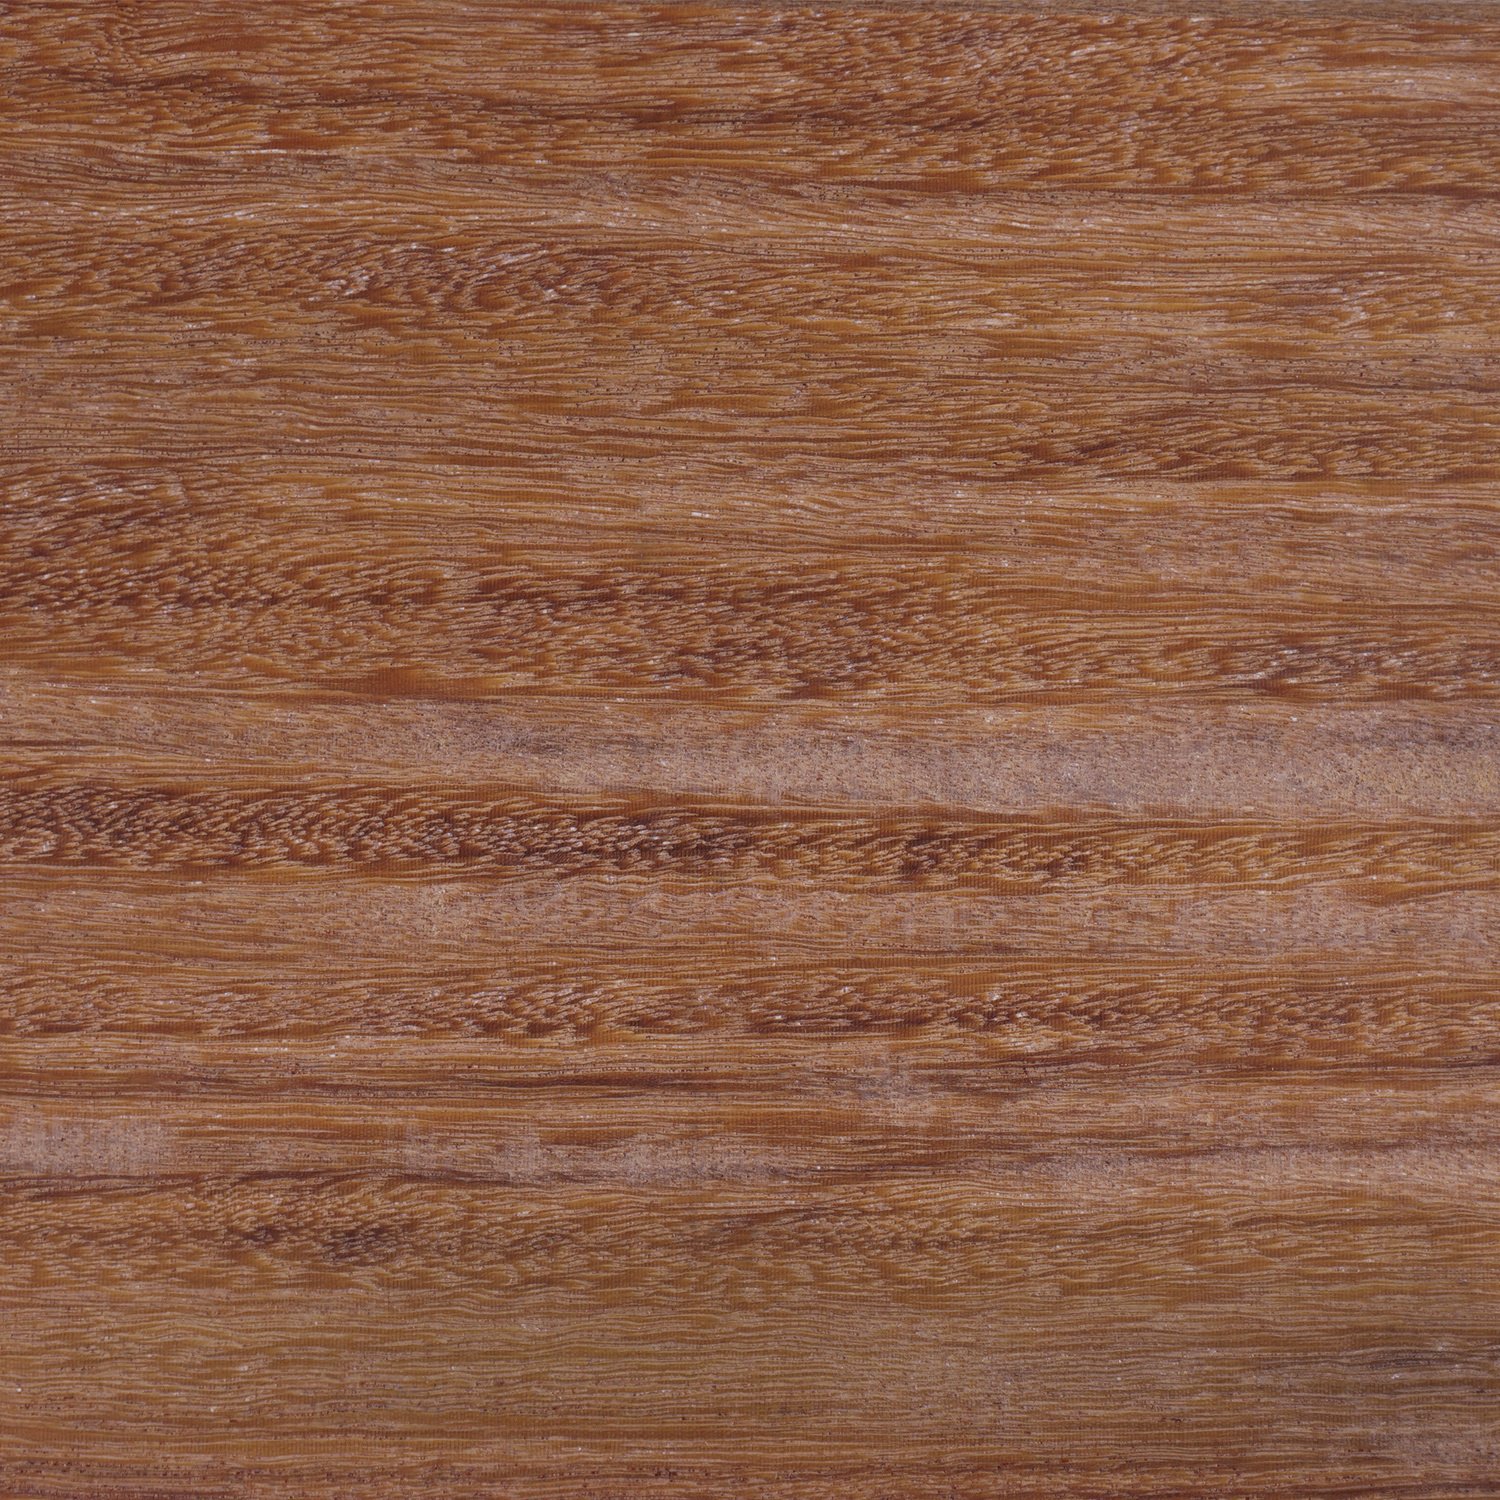  Cumaru rhombus deel - profiel - plank 21x90mm geschaafd -  kunstmatig gedroogd (kd 18-20%)- tropisch hardhout